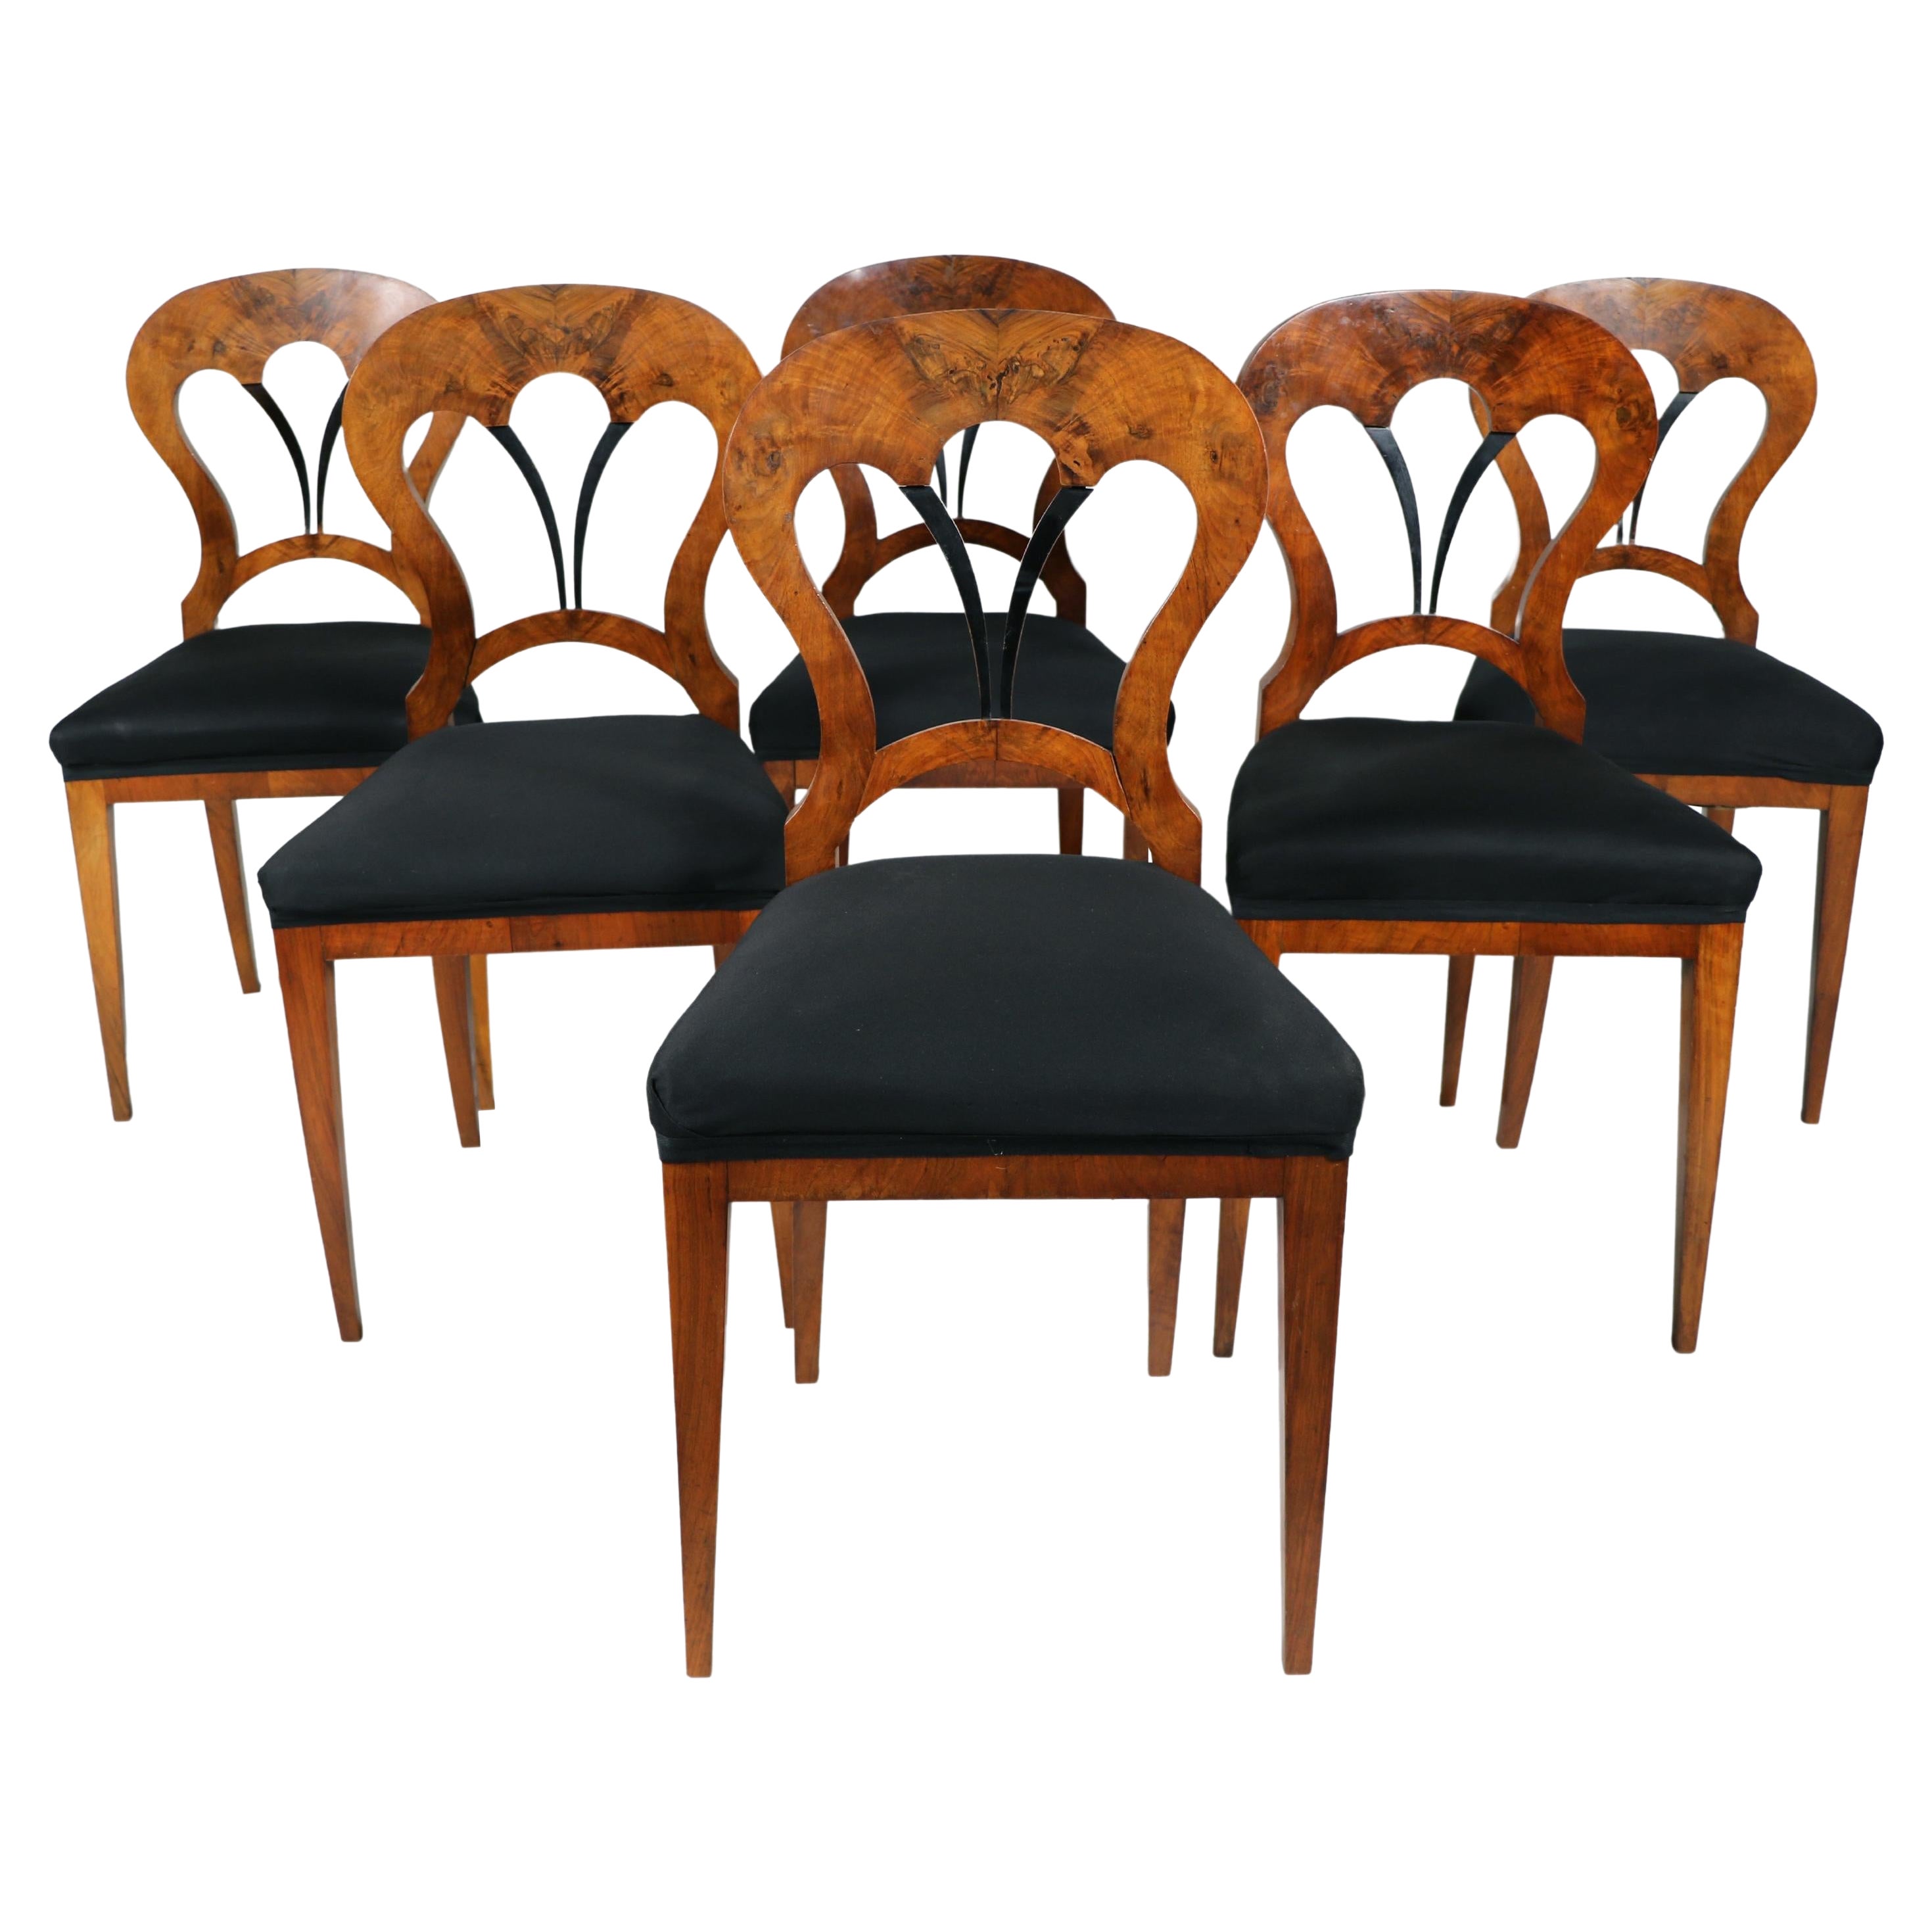 Ensemble de six chaises Biedermeier en noyer du 19e siècle. Vienne, vers 1825.